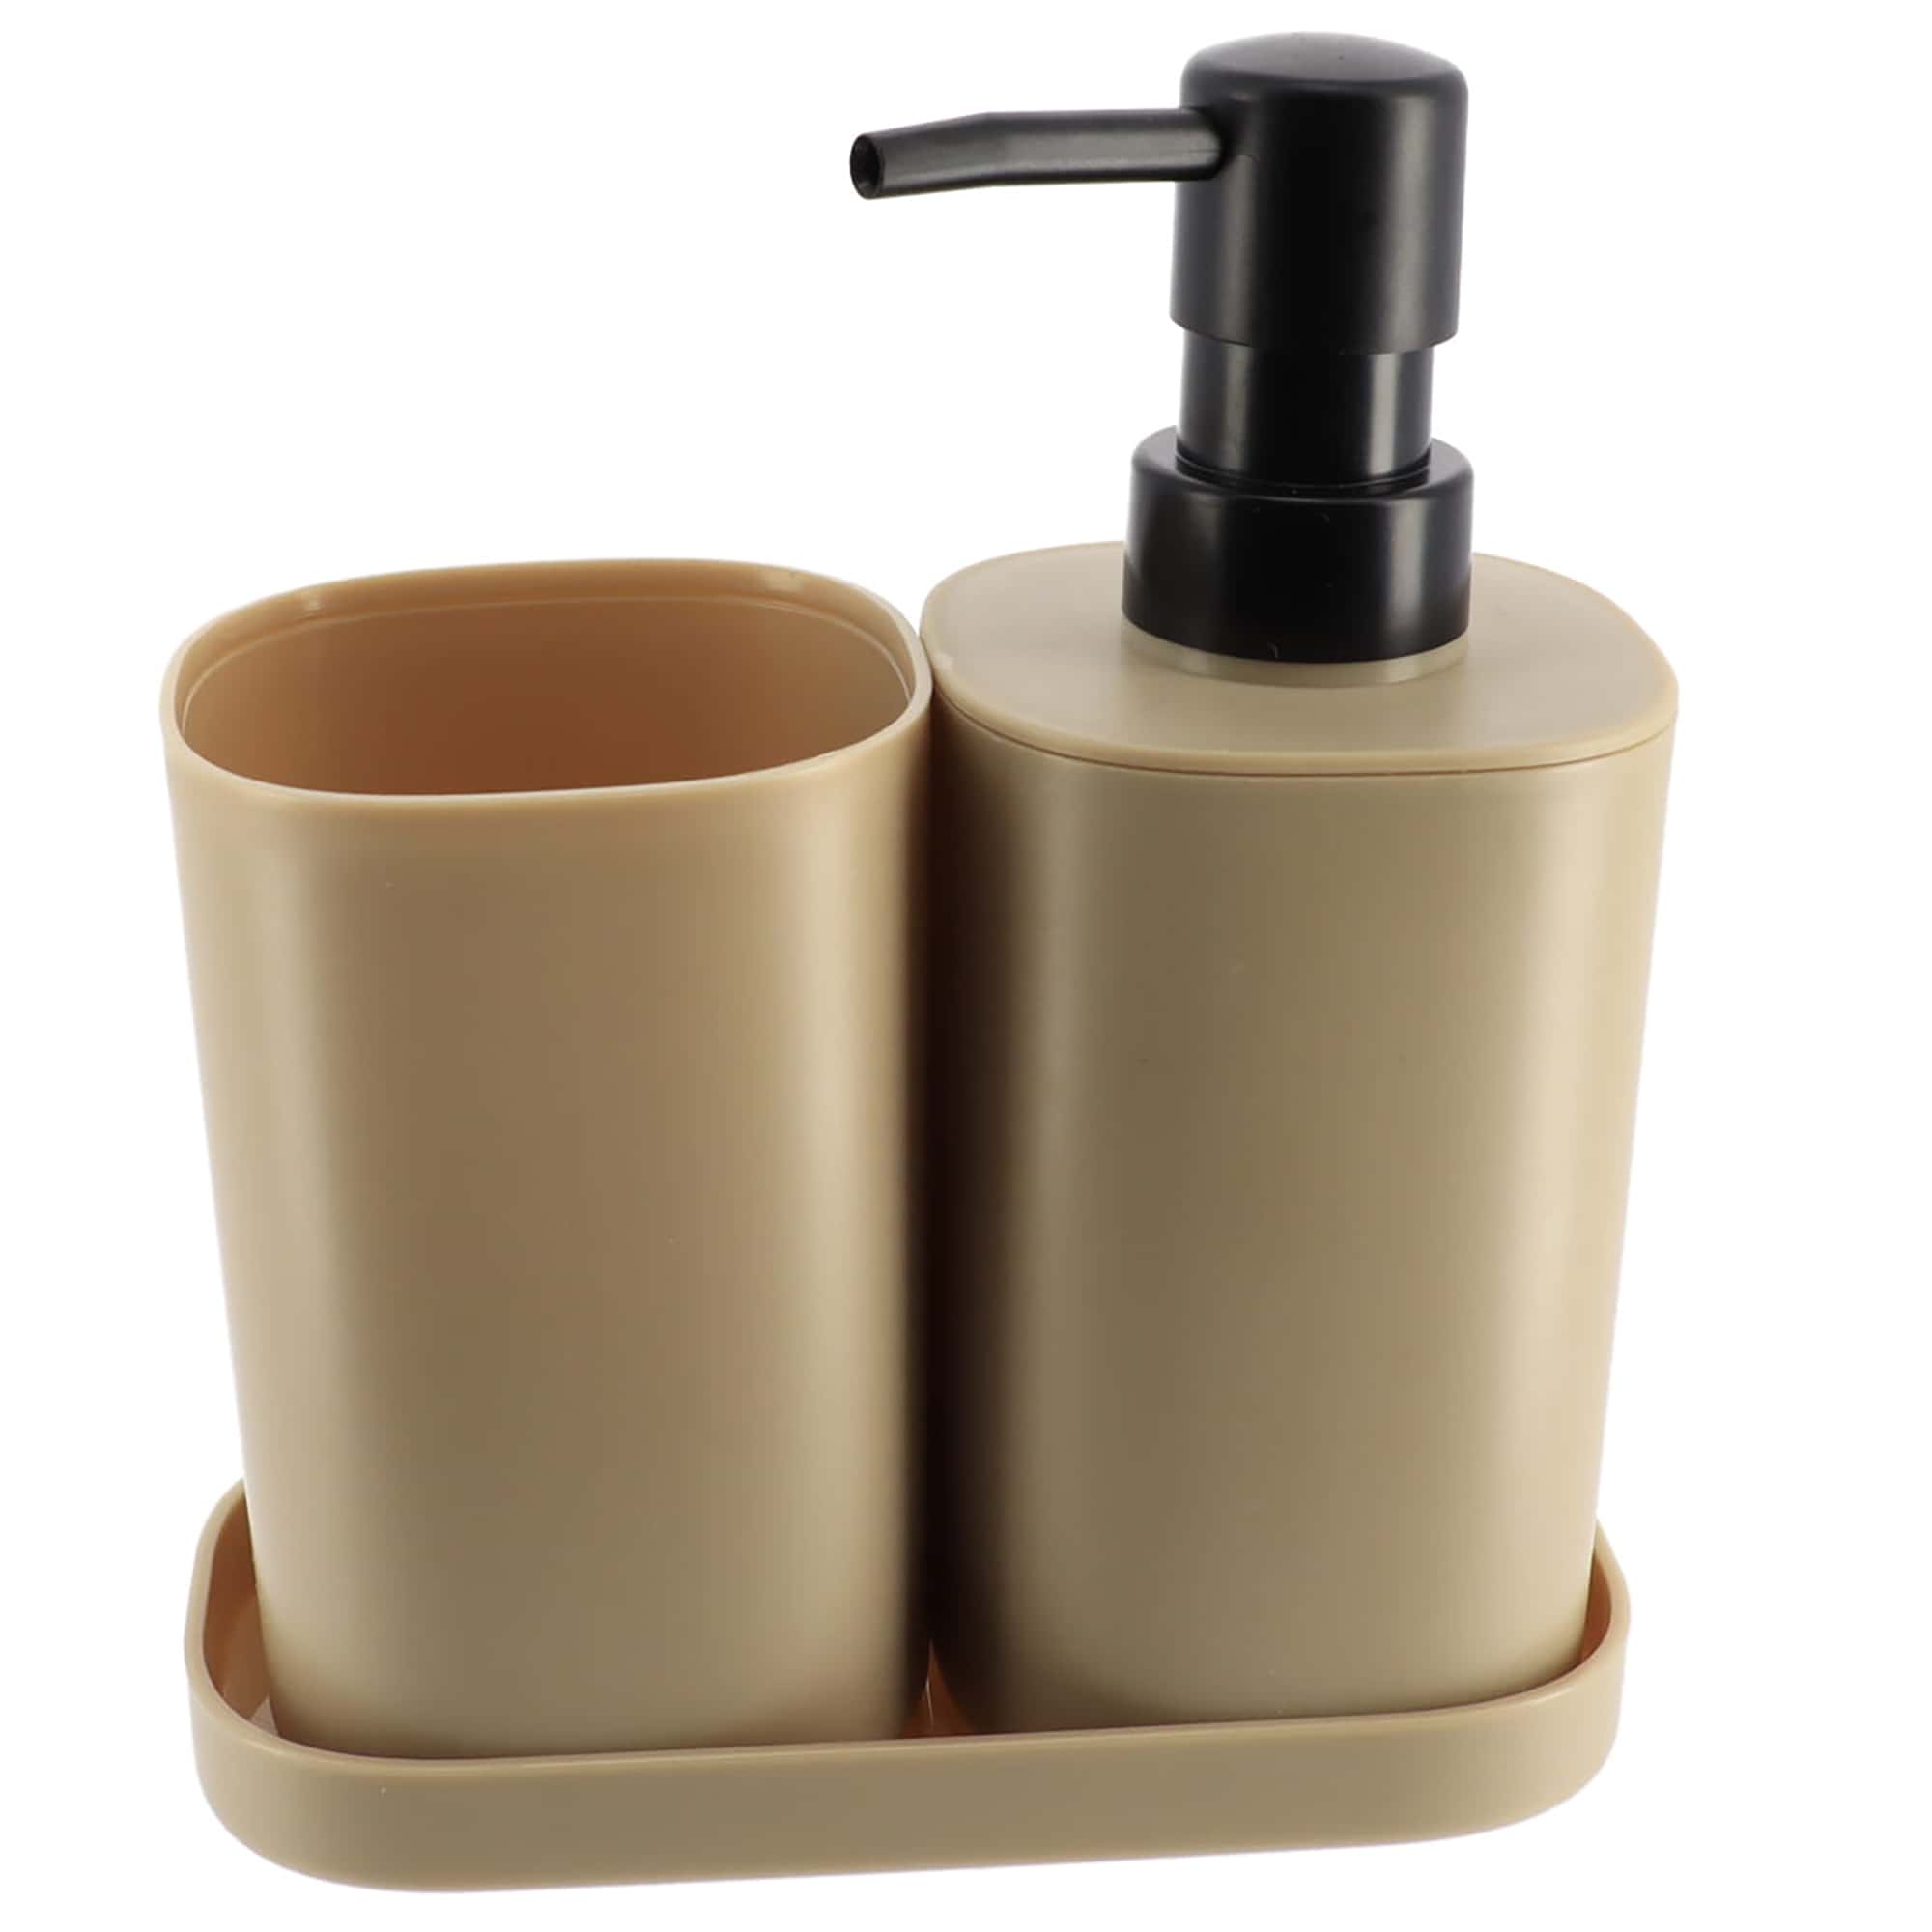 Beige Bath Set of 3 Pieces - Tumbler - Soap Dispenser - Soap Dish